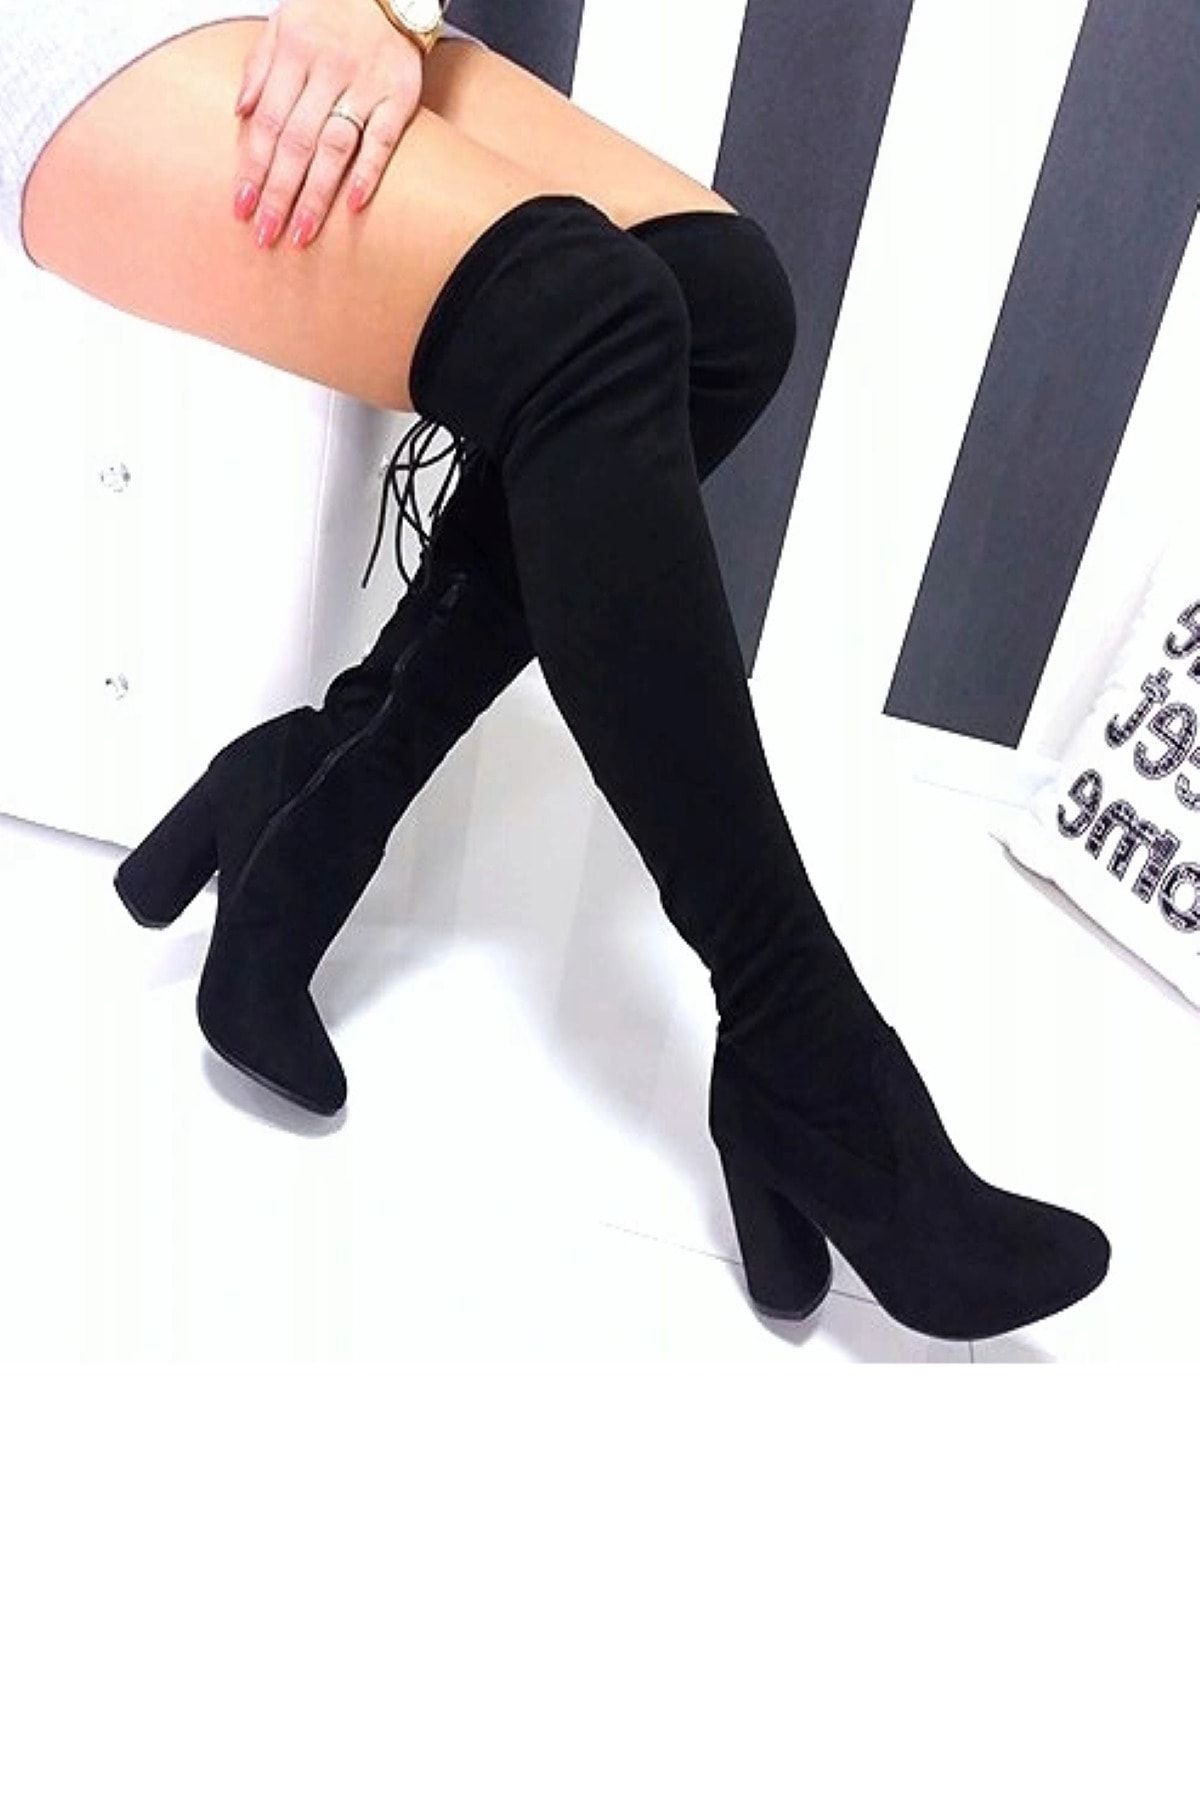 TrendyAnka Kadın Siyah Çorap Çizme, Yuvarlak Burunlu 8.5 Cm Topuklu Streç Çizme